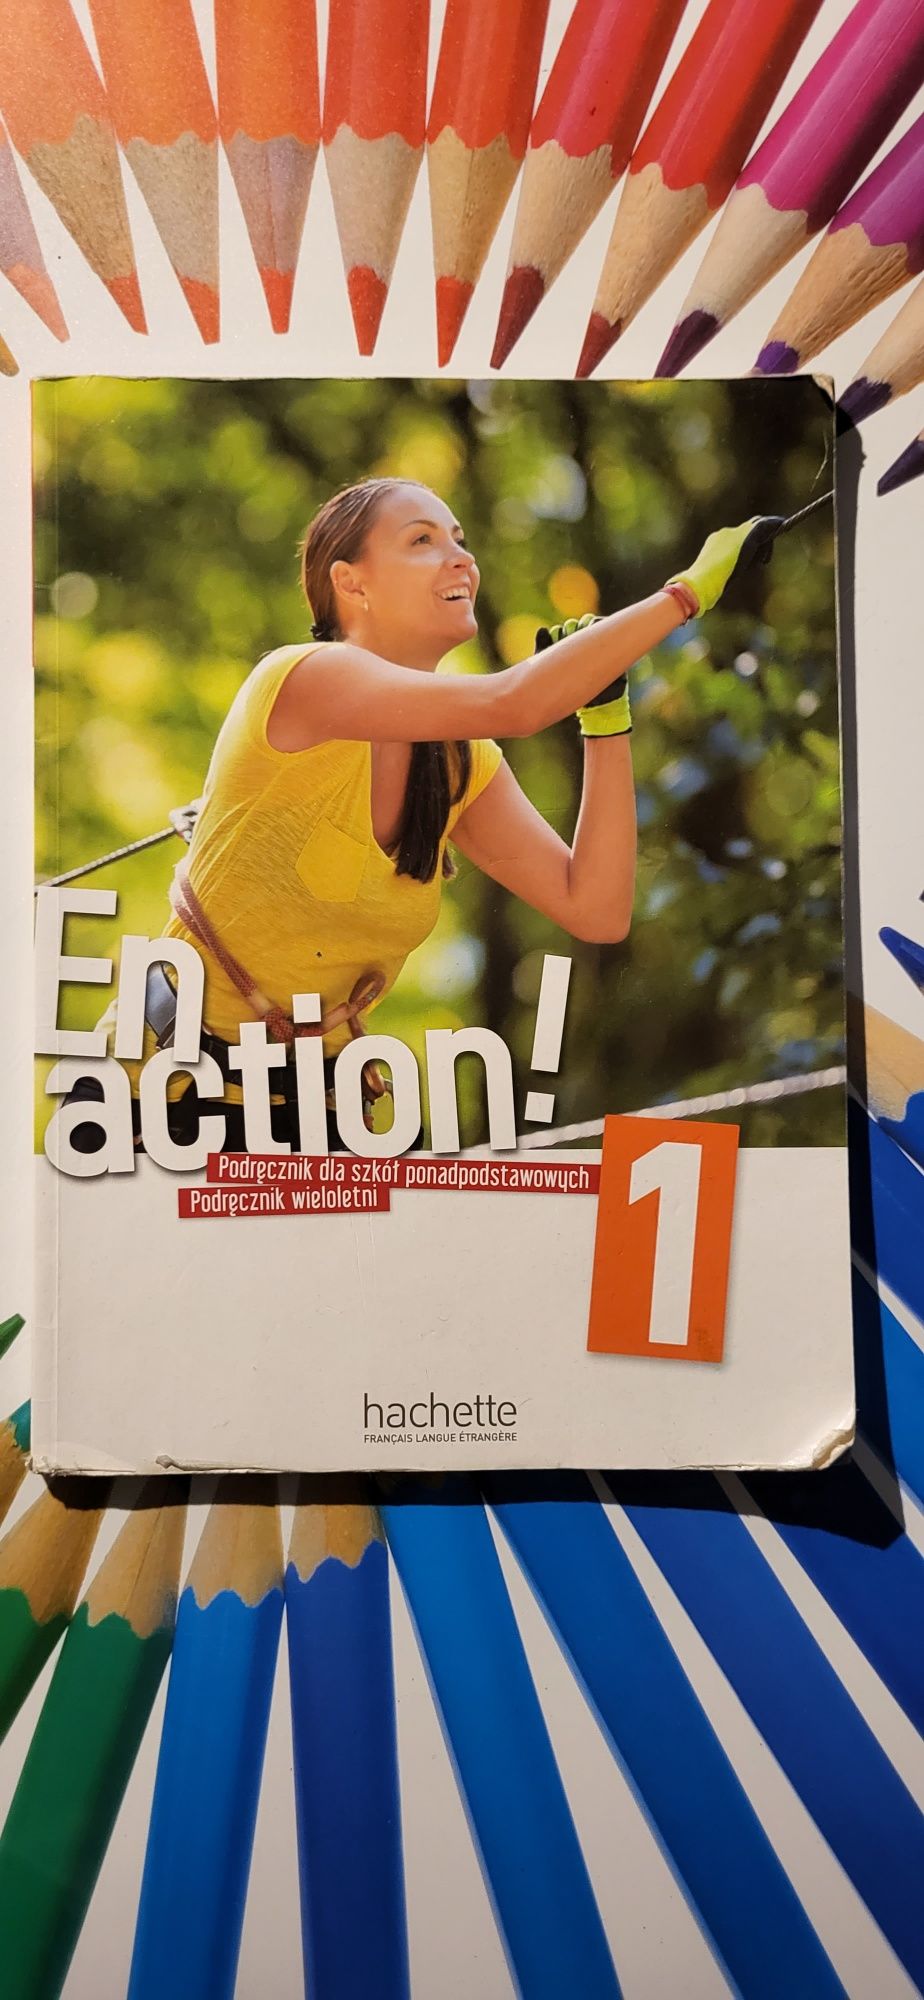 En action! Podręcznik dla szkół ponadpodstawowych część 1